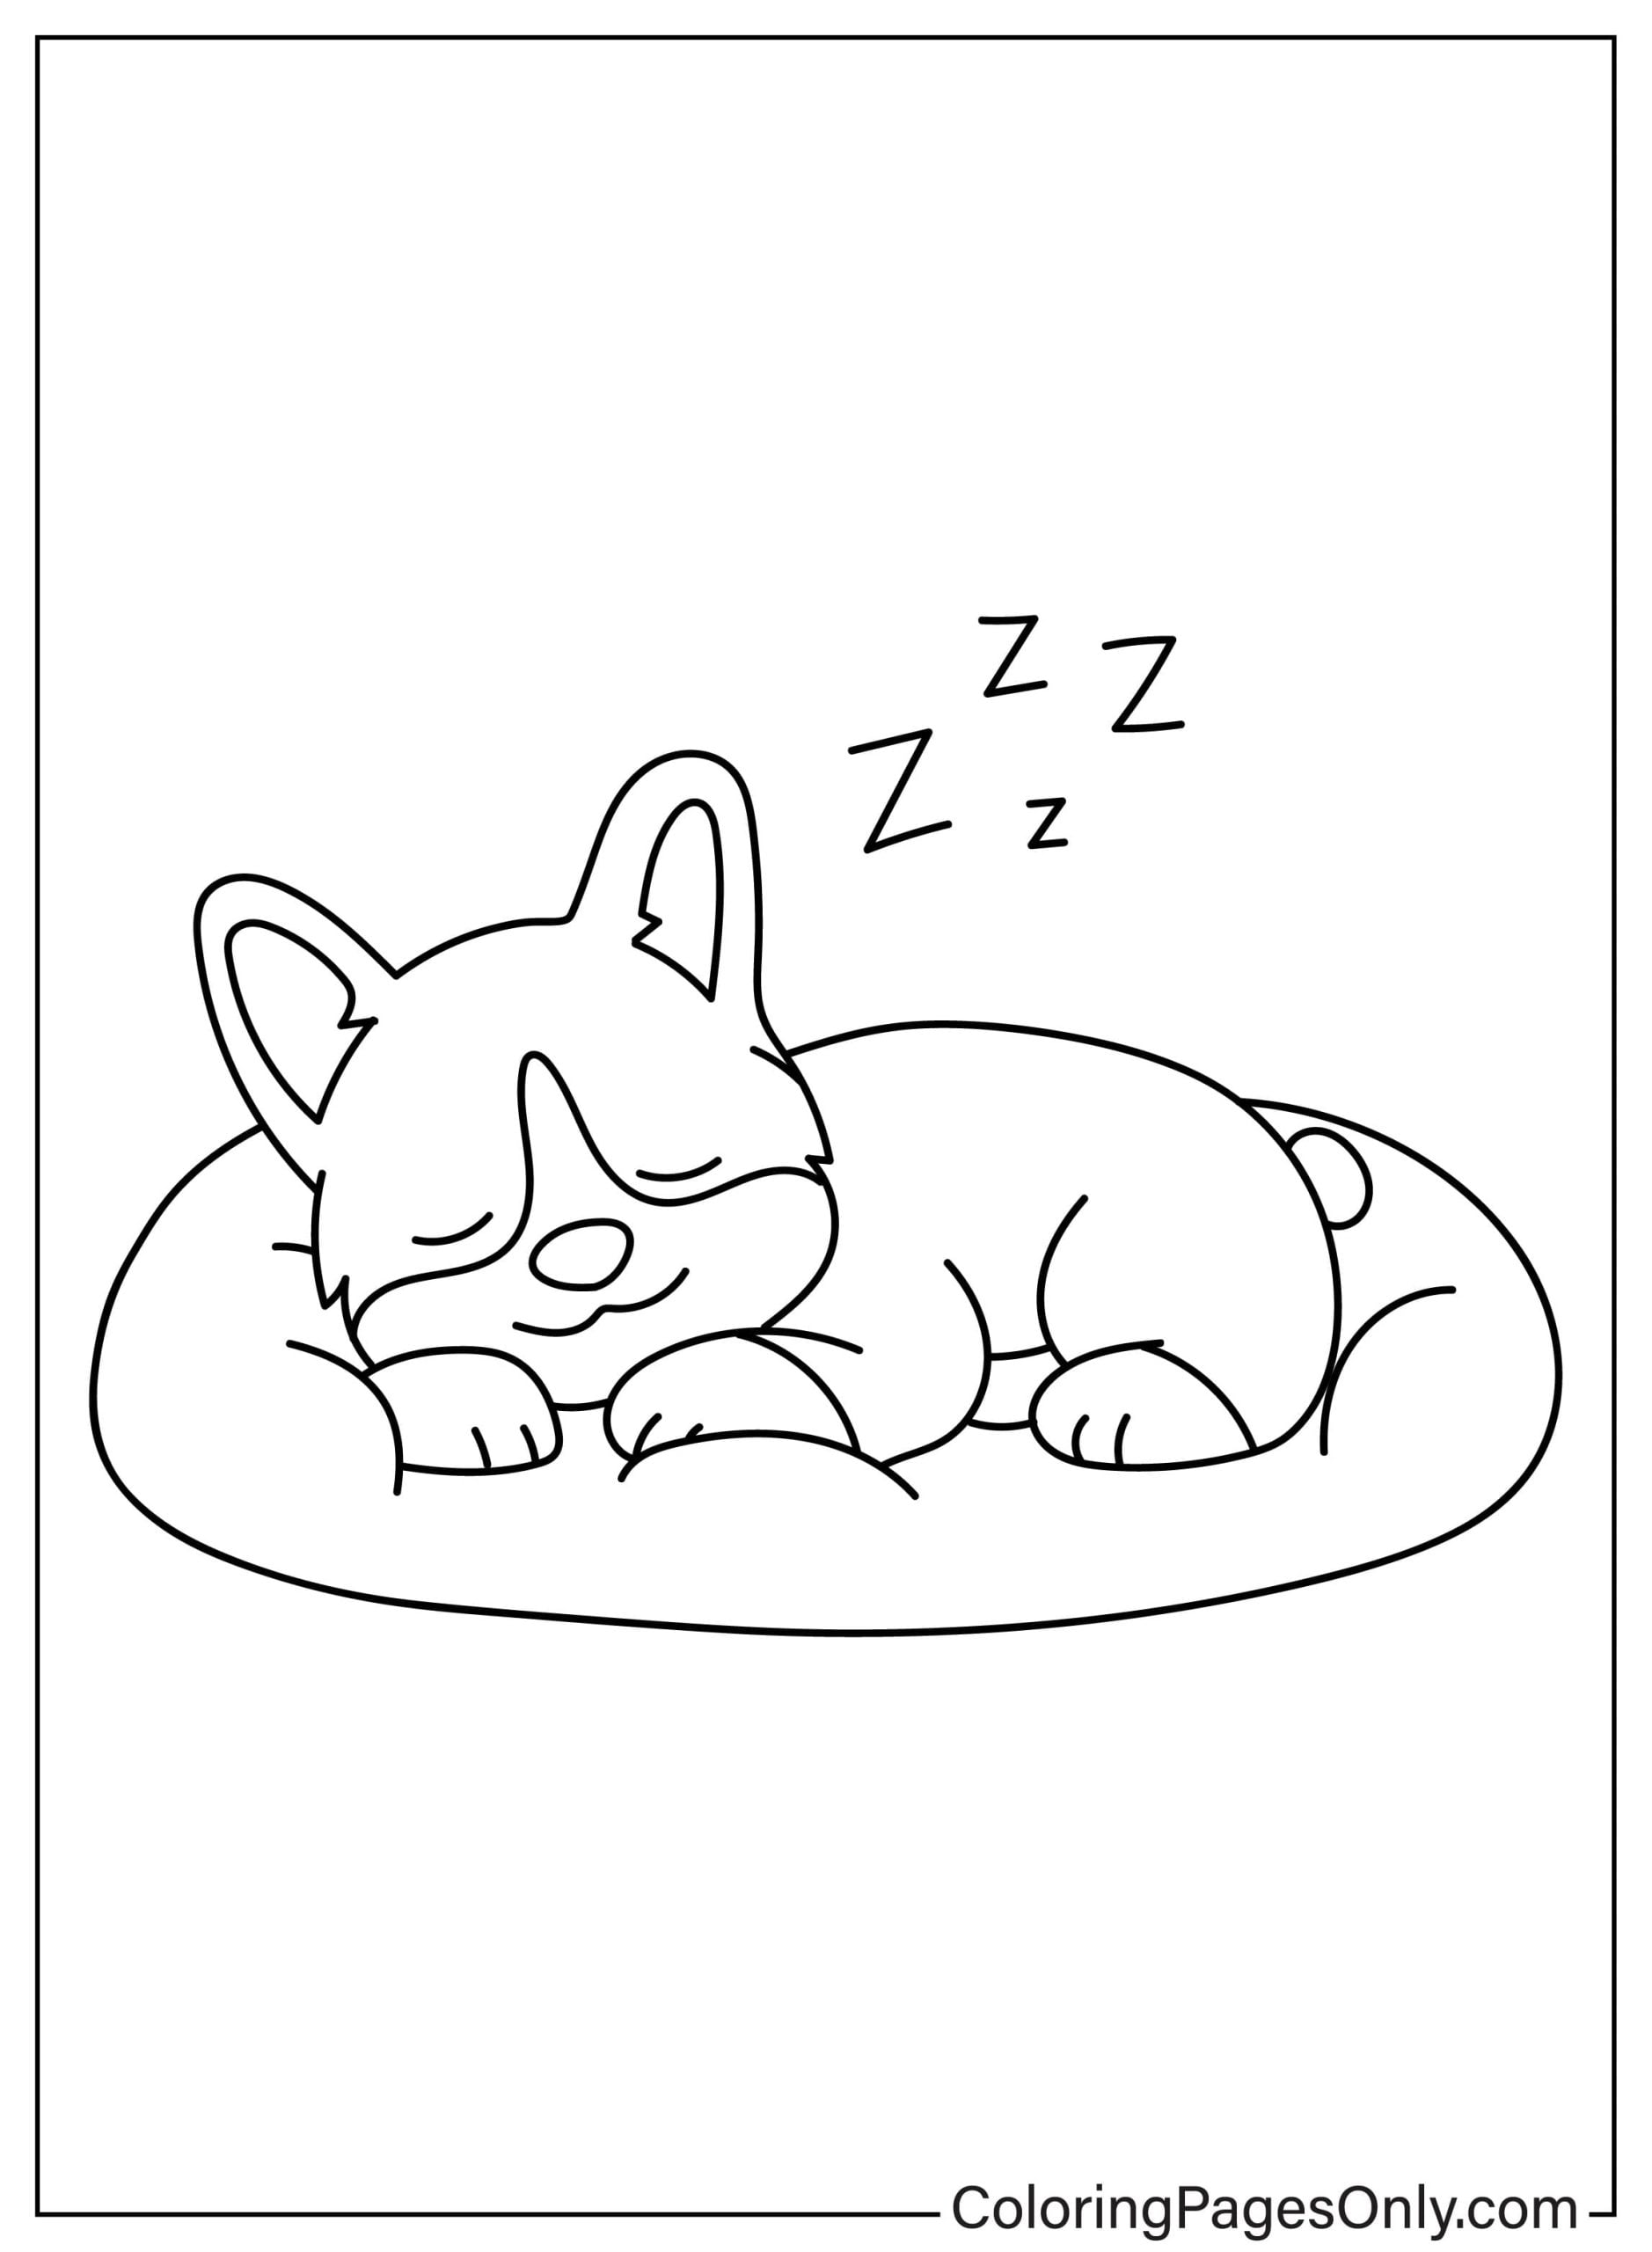 Corgi-Hund schläft auf einem Kissen von Corgi